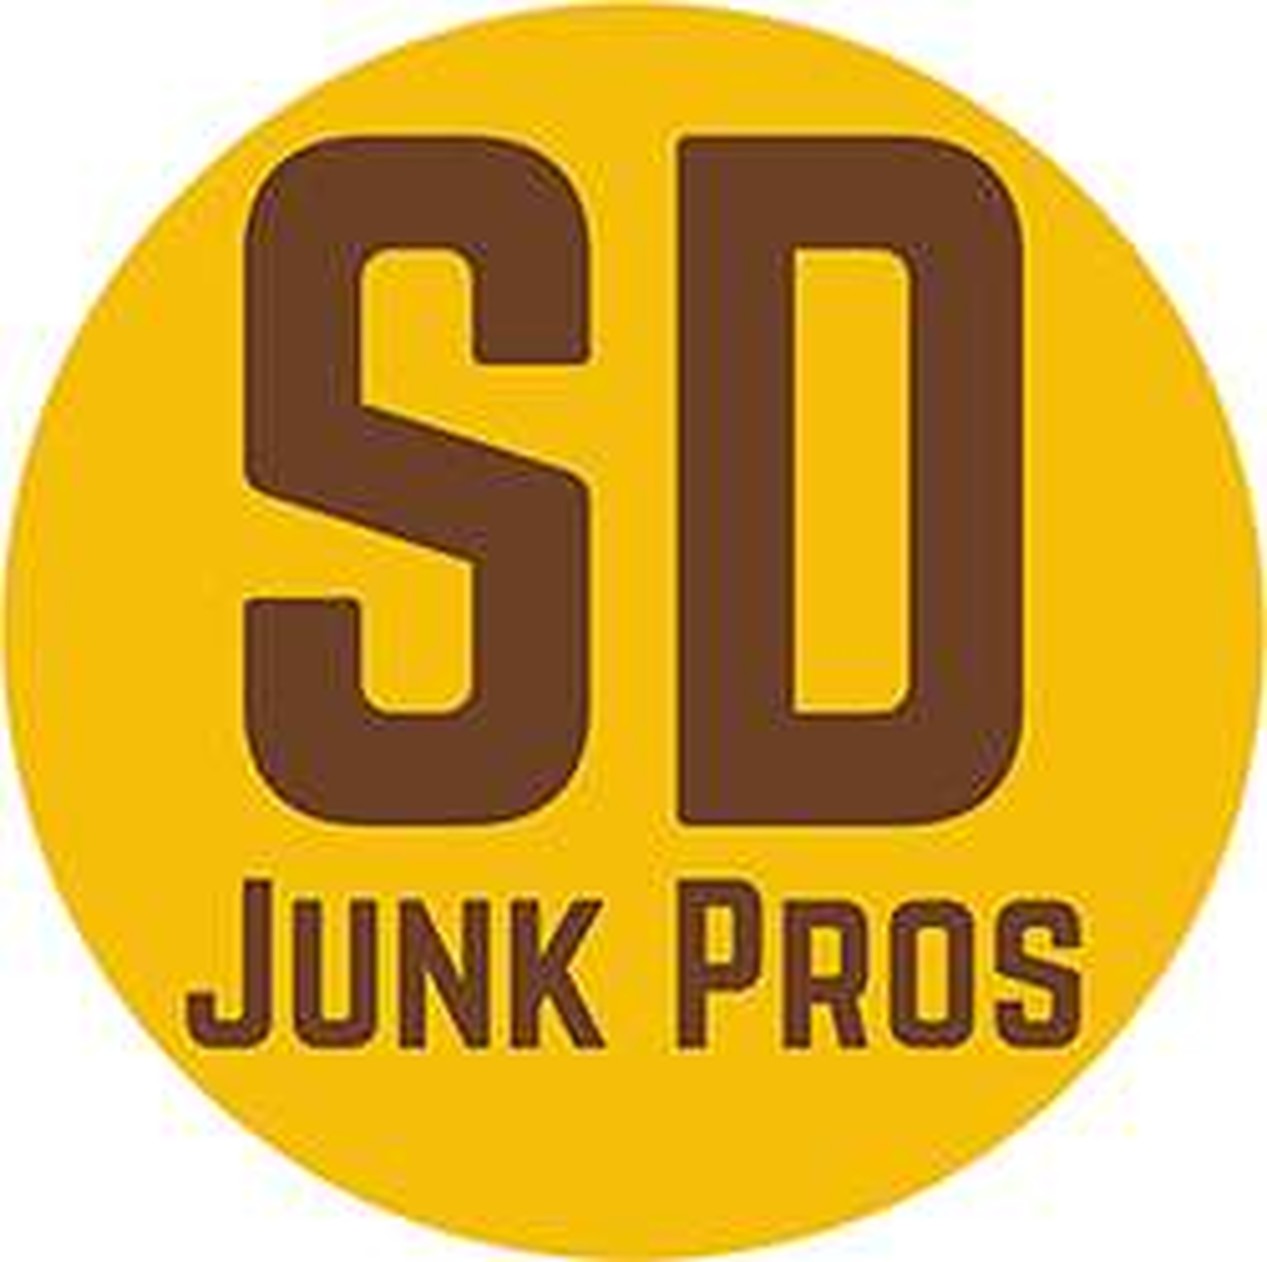 SD Junk Pros